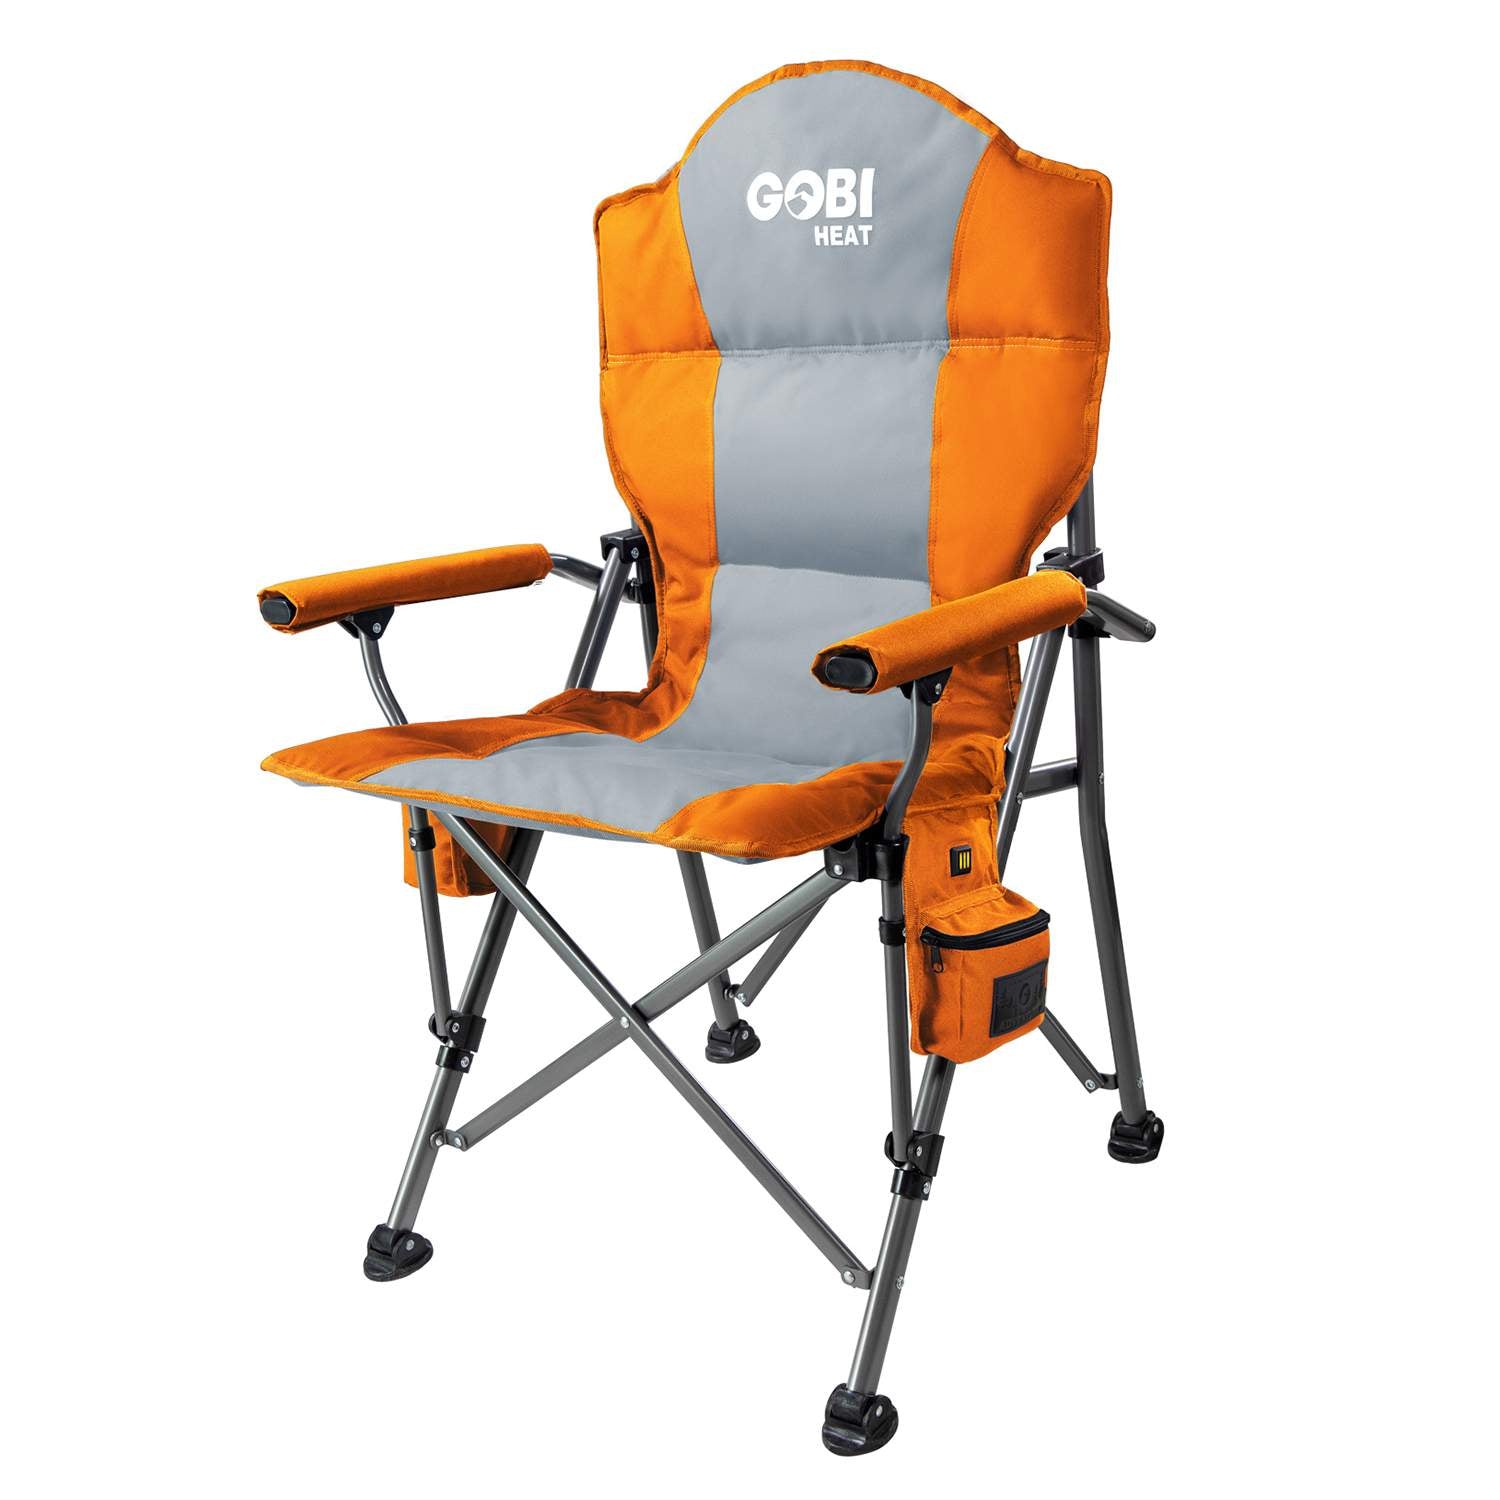 Terrain Heated Camping Chair by Gobi Heat